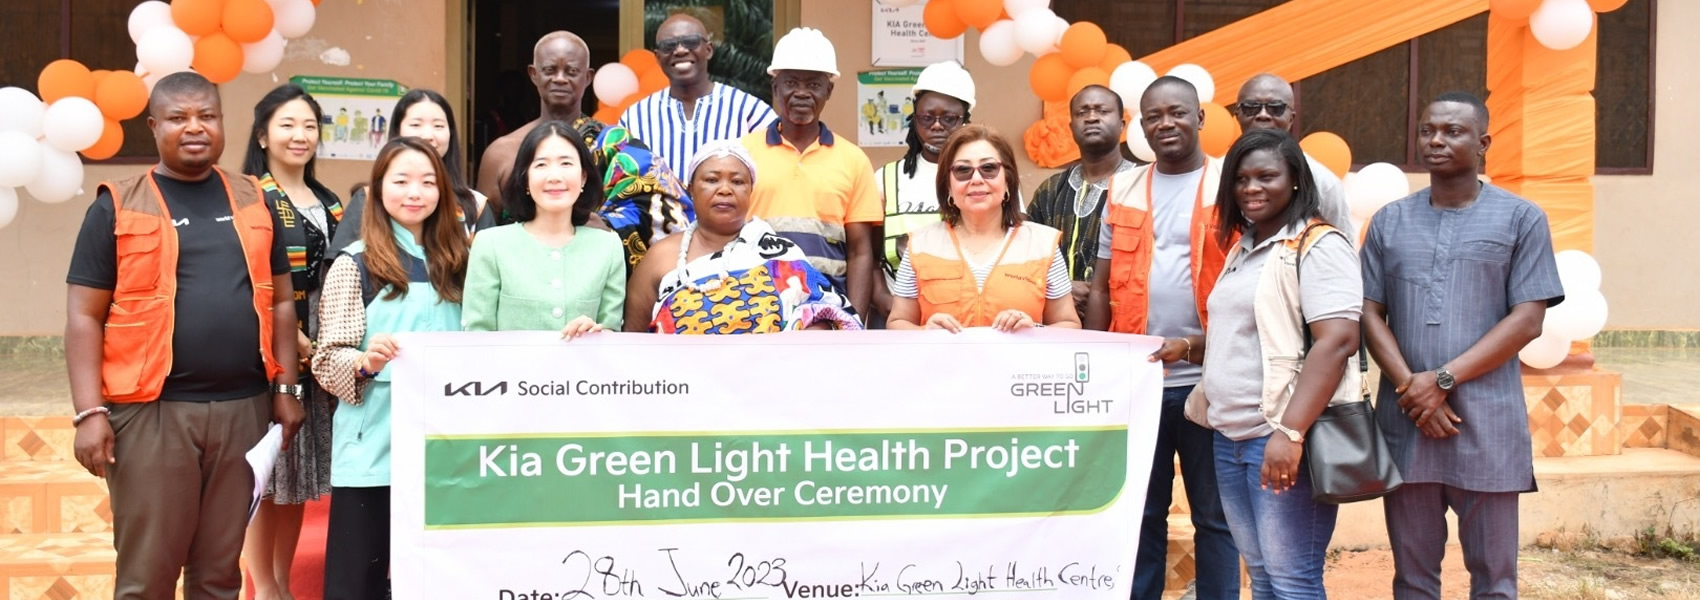 Projekt Green Light v Ghaně